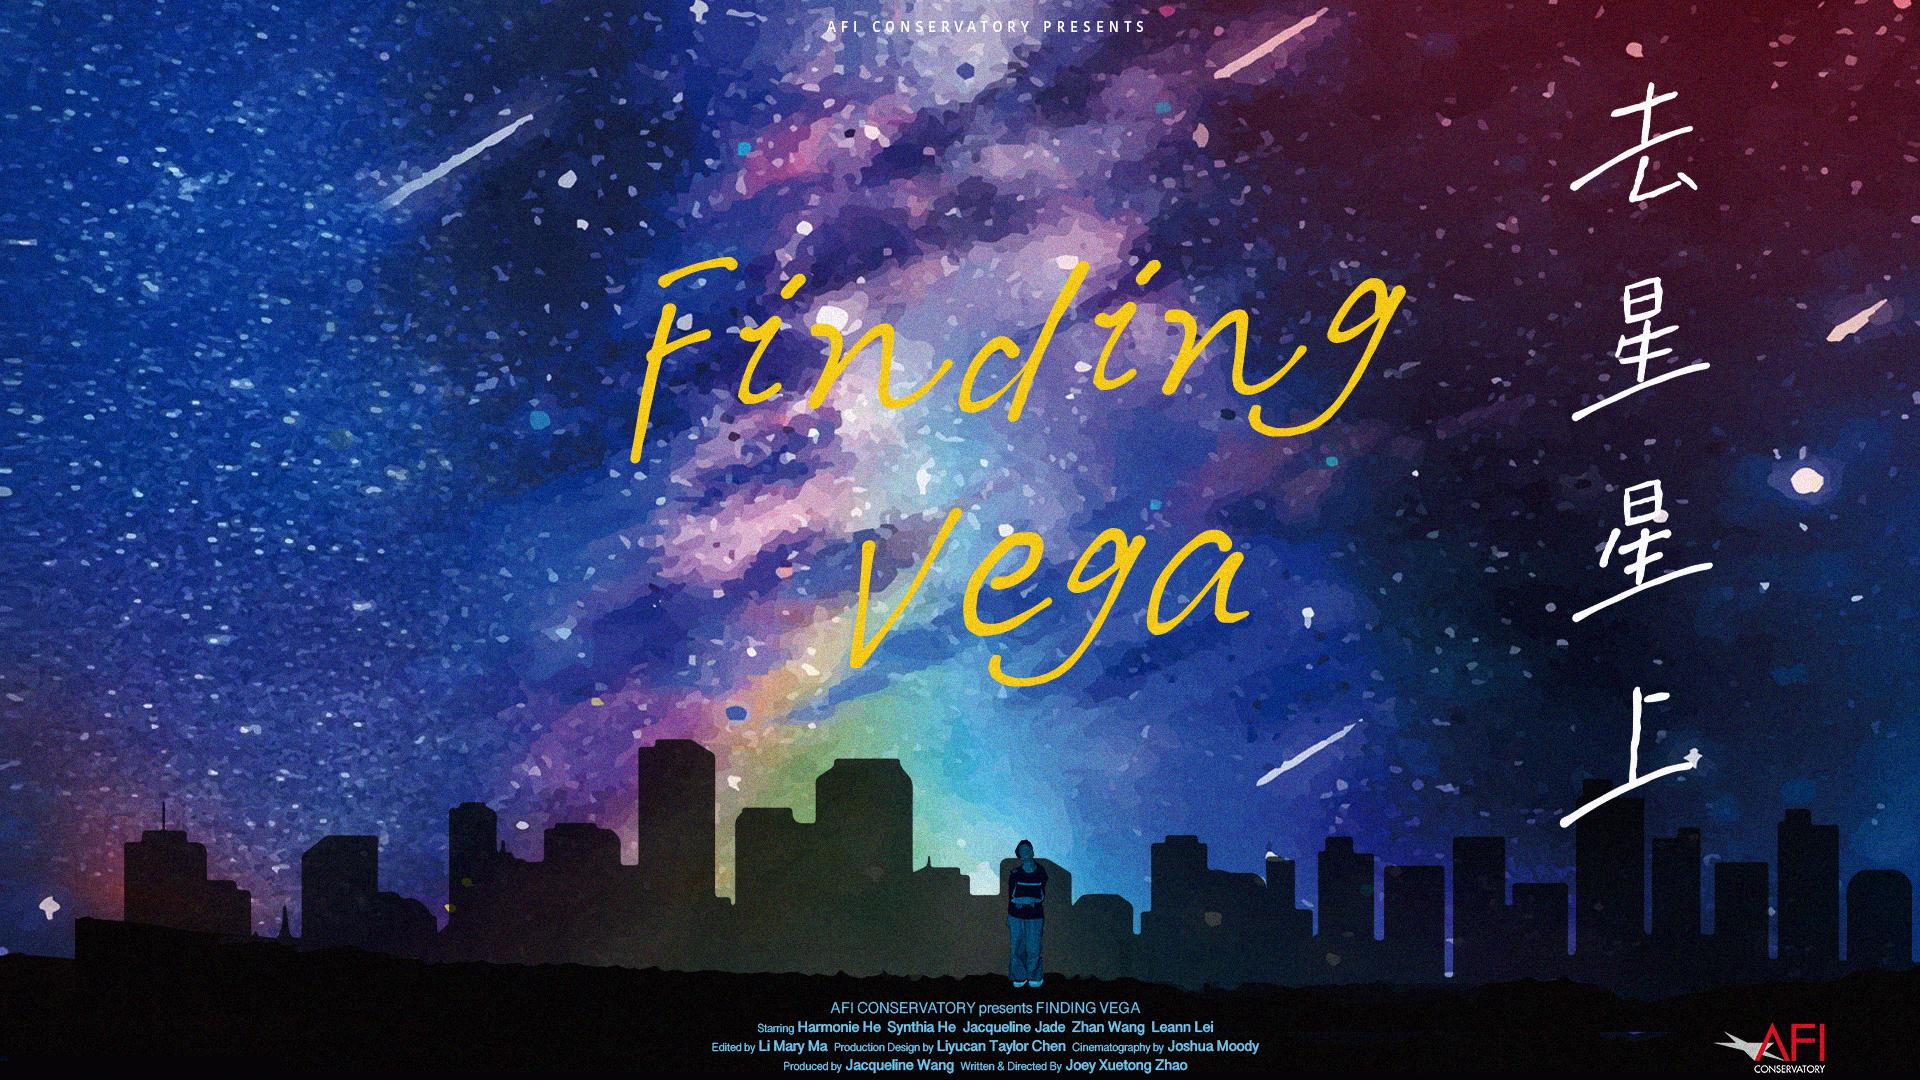 Finding Vega